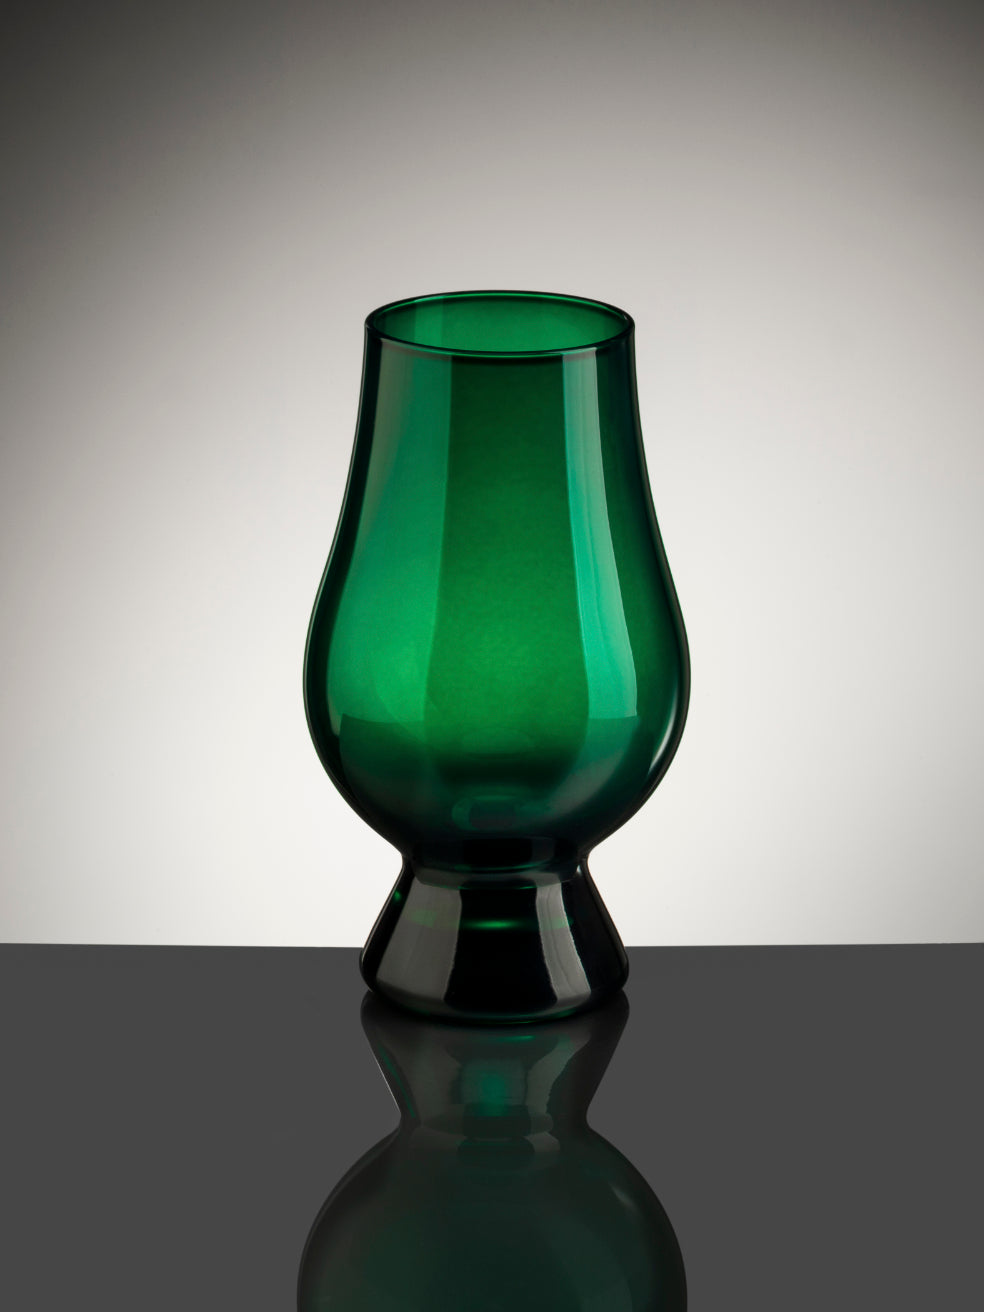 The Glencairn Whisky Glass in green.